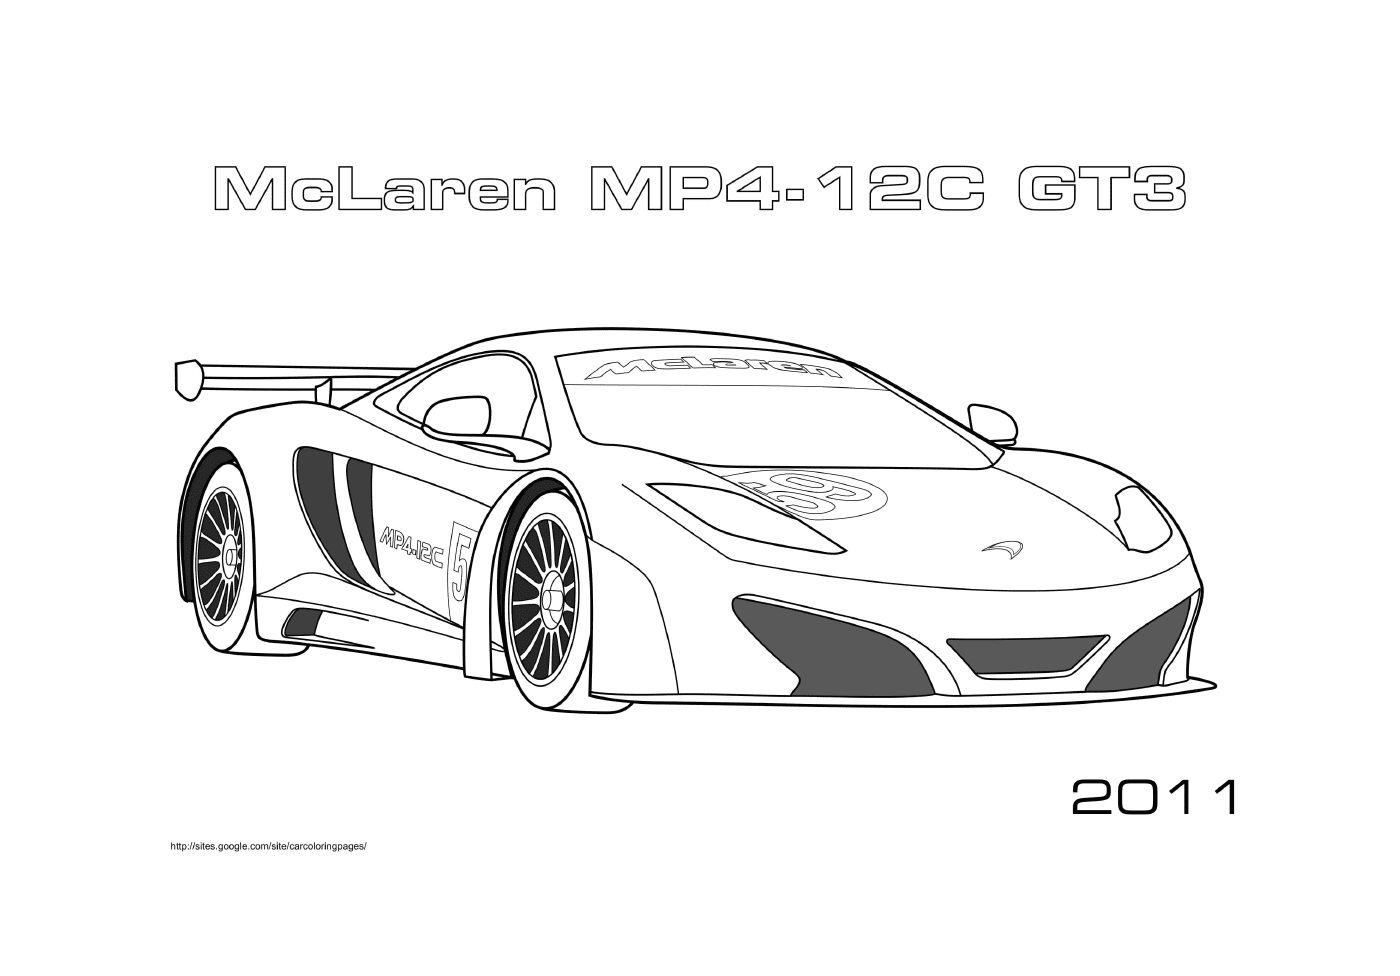   McLaren MP4-12C GT3 2011 